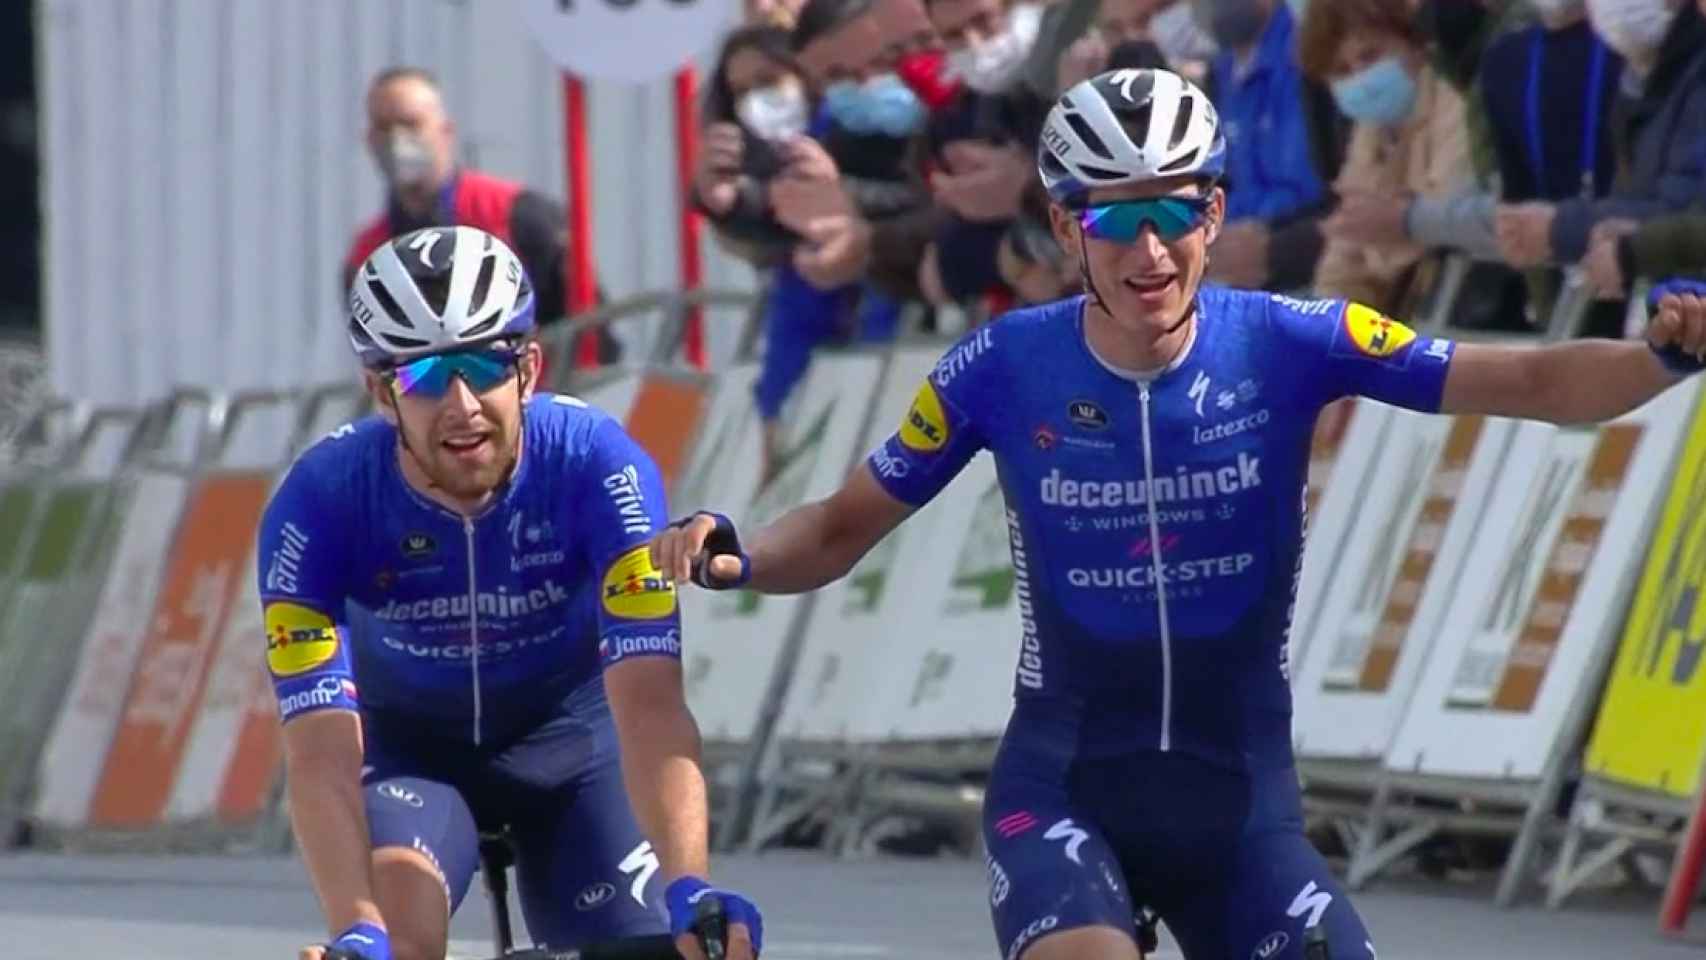 Honoré y Cerny entran juntos en meta en la Vuelta al País Vasco